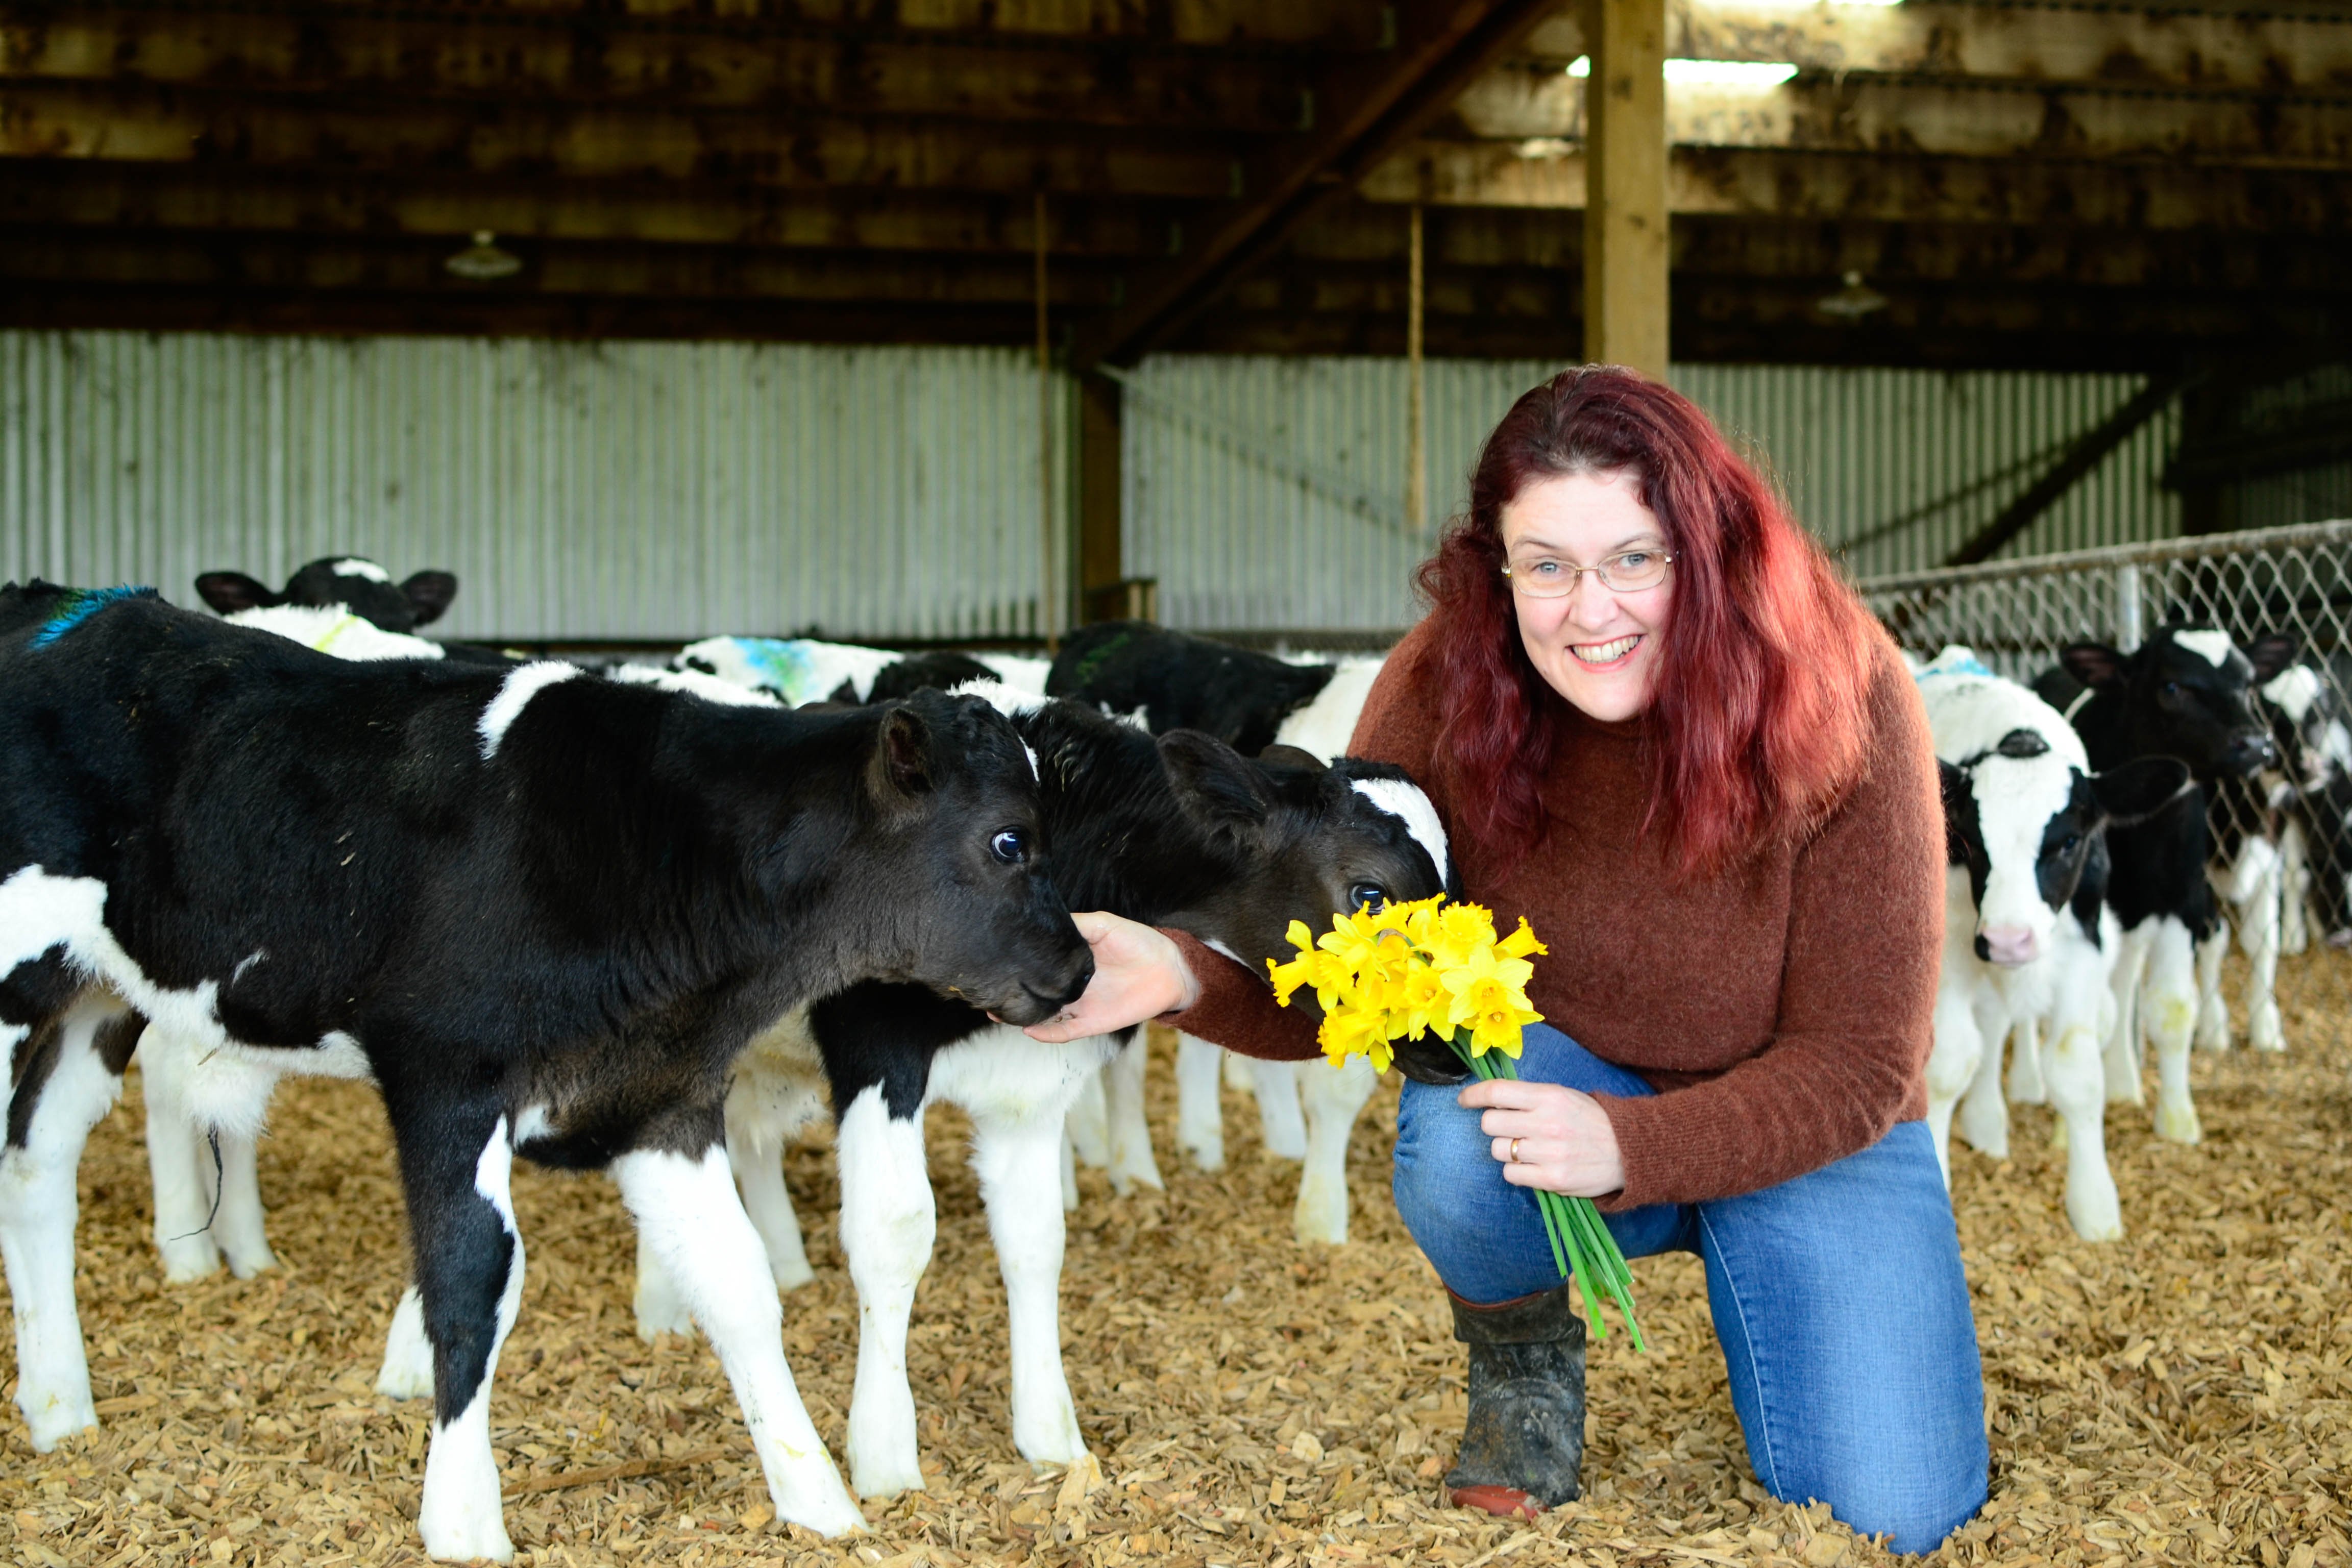 Dairy farmer fan of ad-lib feeding